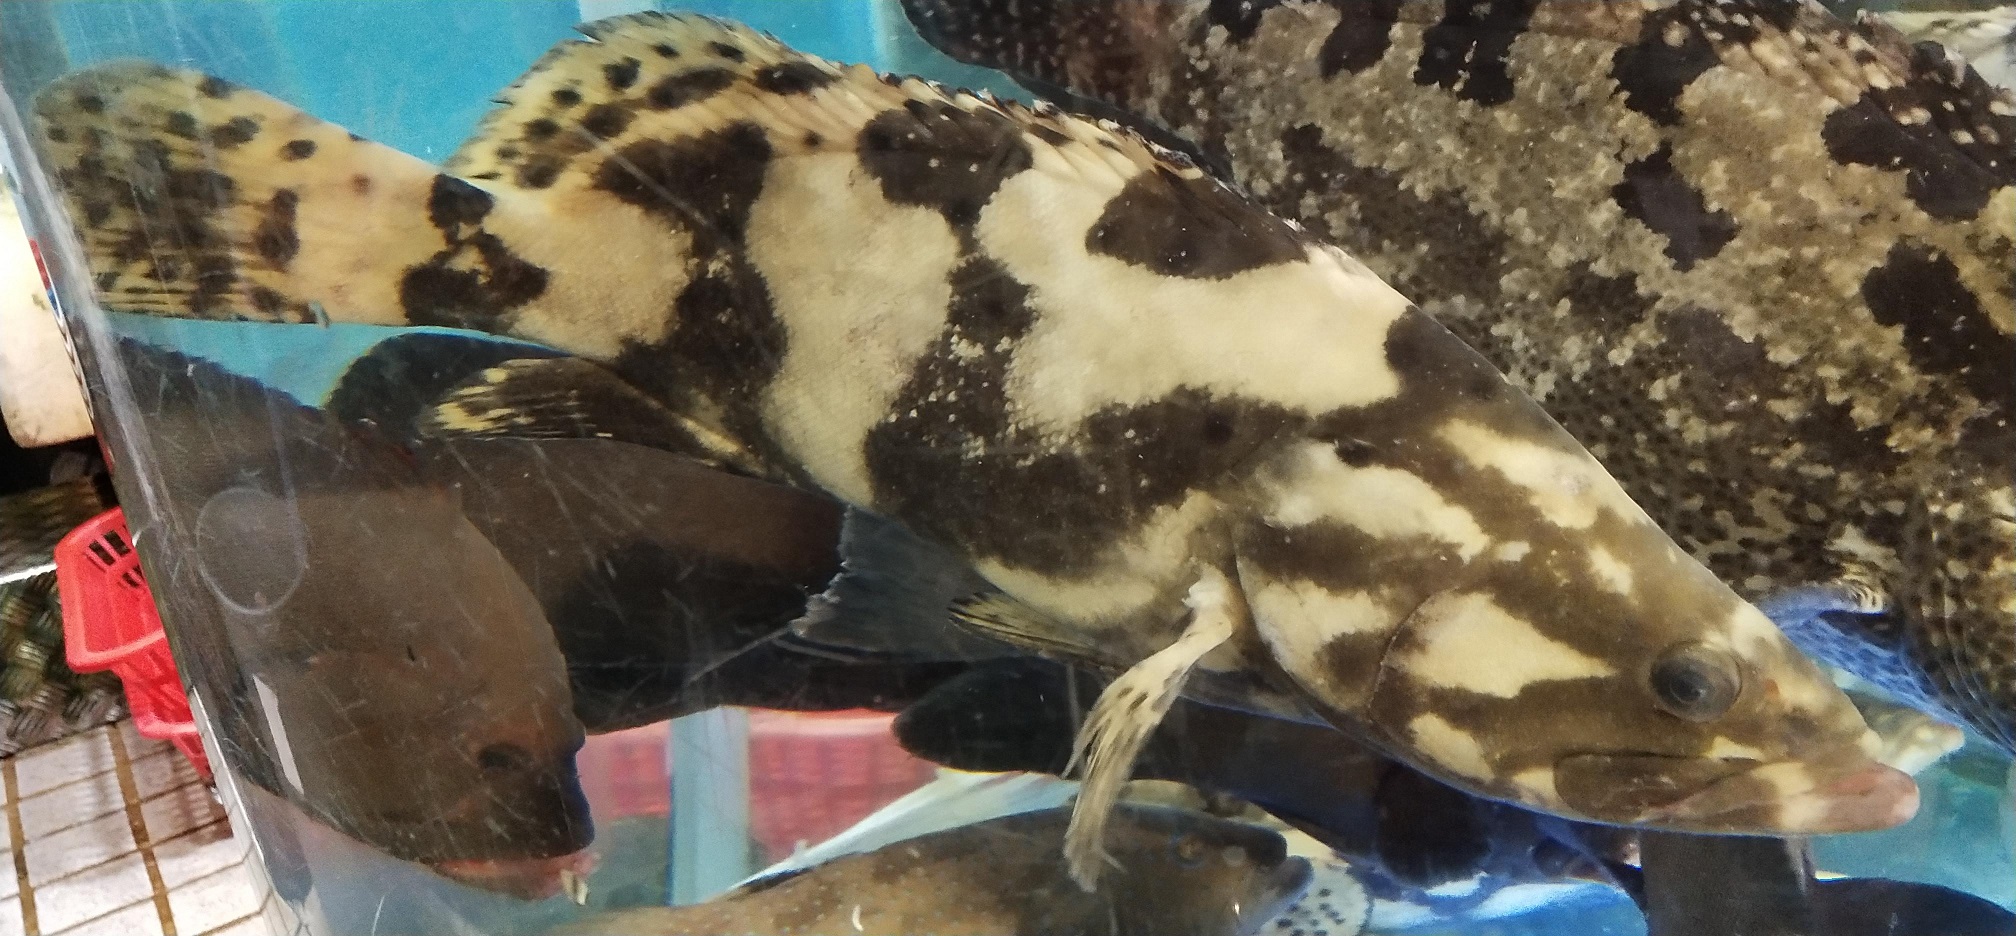 Grouper in aquarium